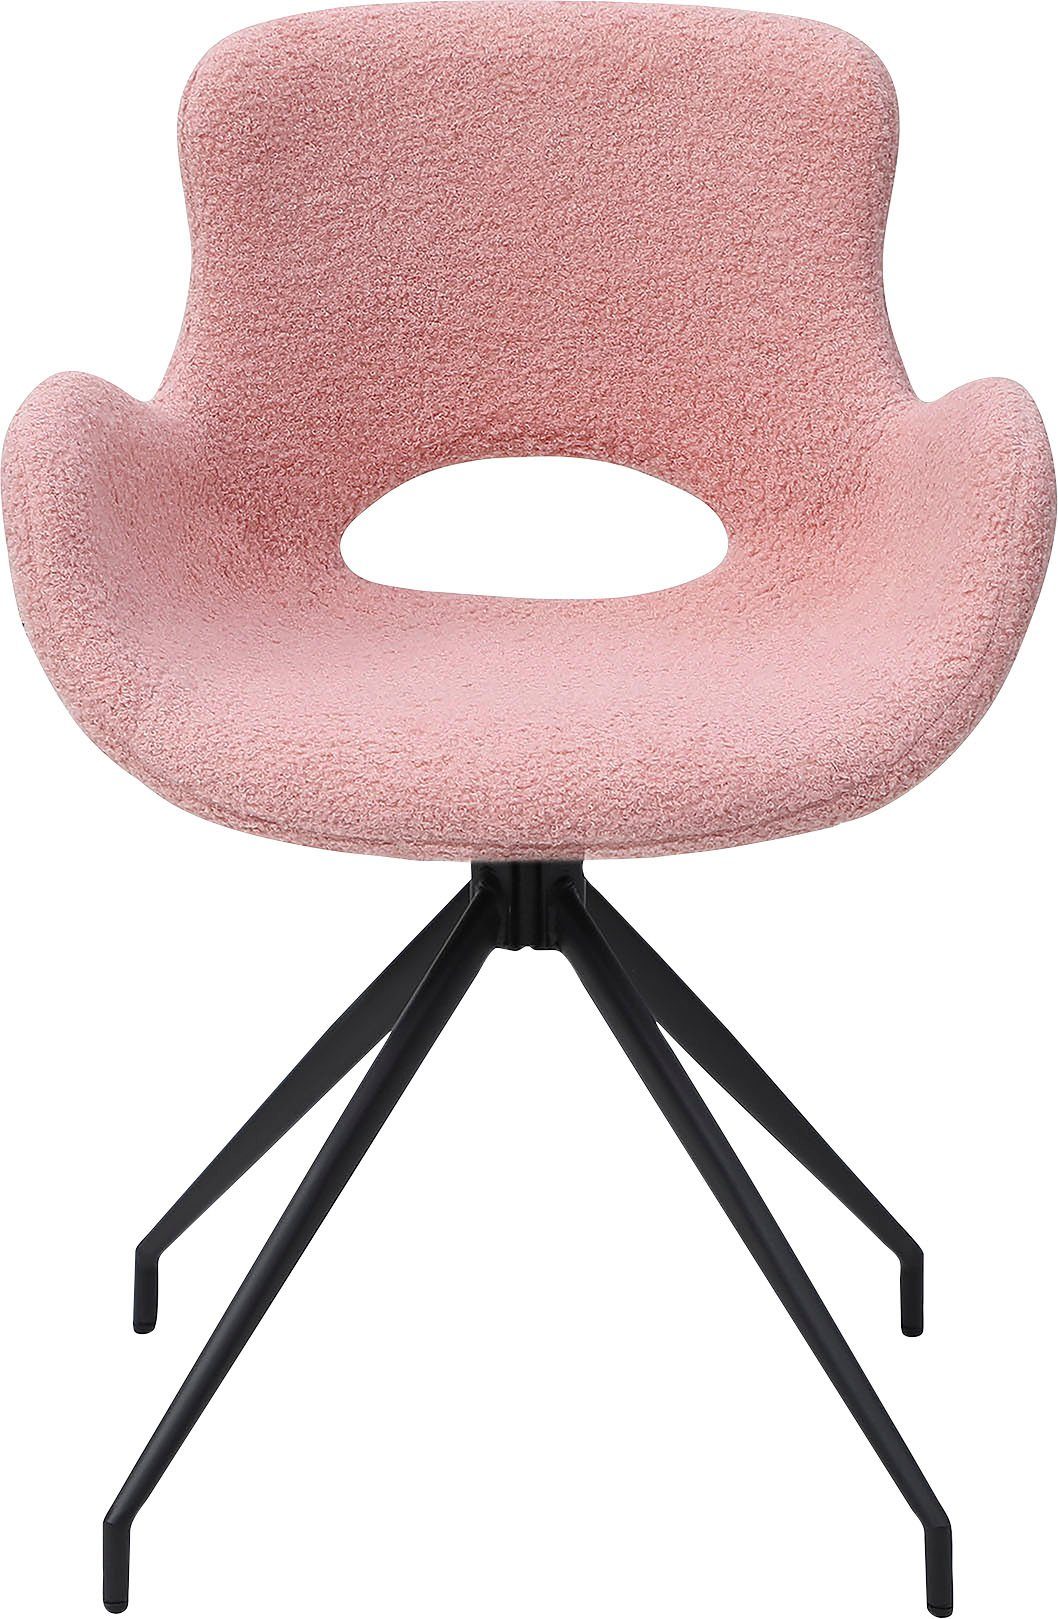 SalesFever Esszimmerstuhl, | Sitzfläche, Rose Rücken Cut-Out Drehplatte Rose/Schwarz 180° mit unter der